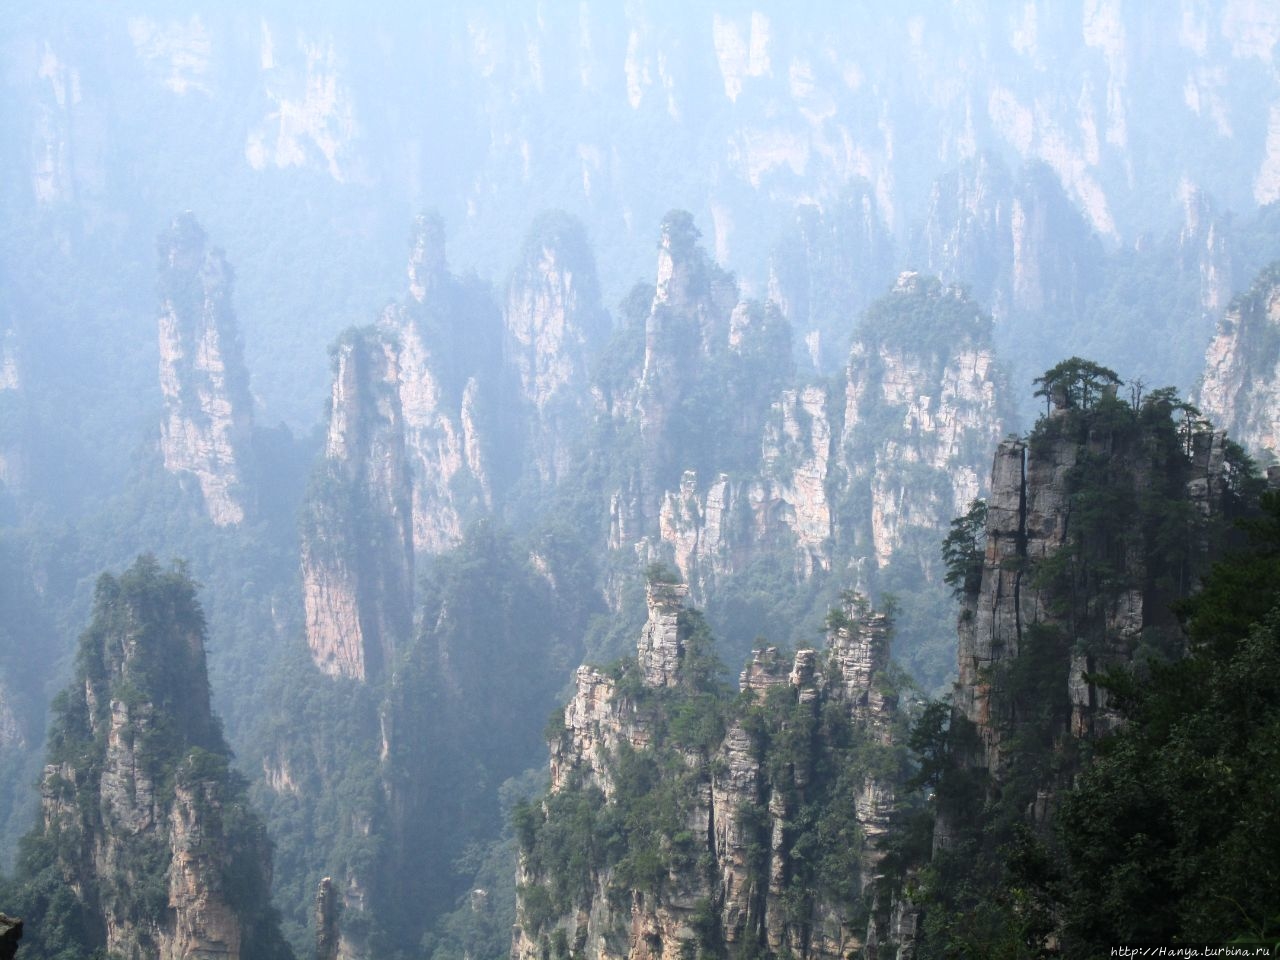 Резерват Тяньцзышань Чжанцзяцзе Национальный Лесной Парк (Парк Аватар), Китай